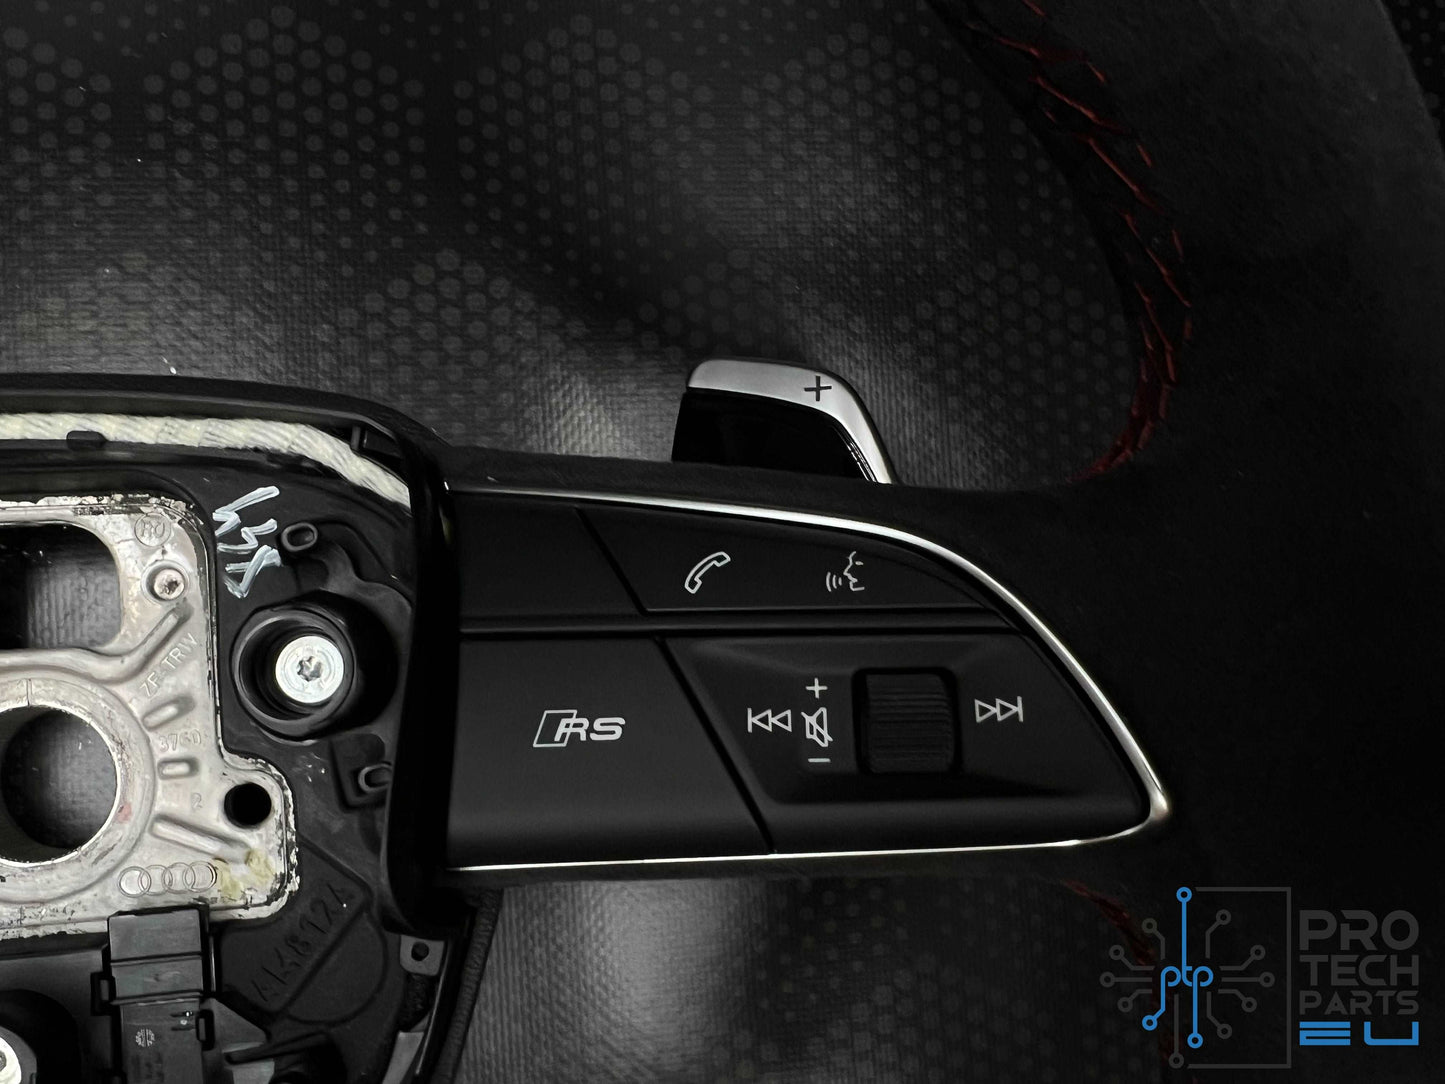 
                  
                    Genuine AUDI RS heated alcantara steering wheel new Q3,A4,A5,S5,RS5,SQ5,Q7,Q8,SQ7,RSQ8
                  
                